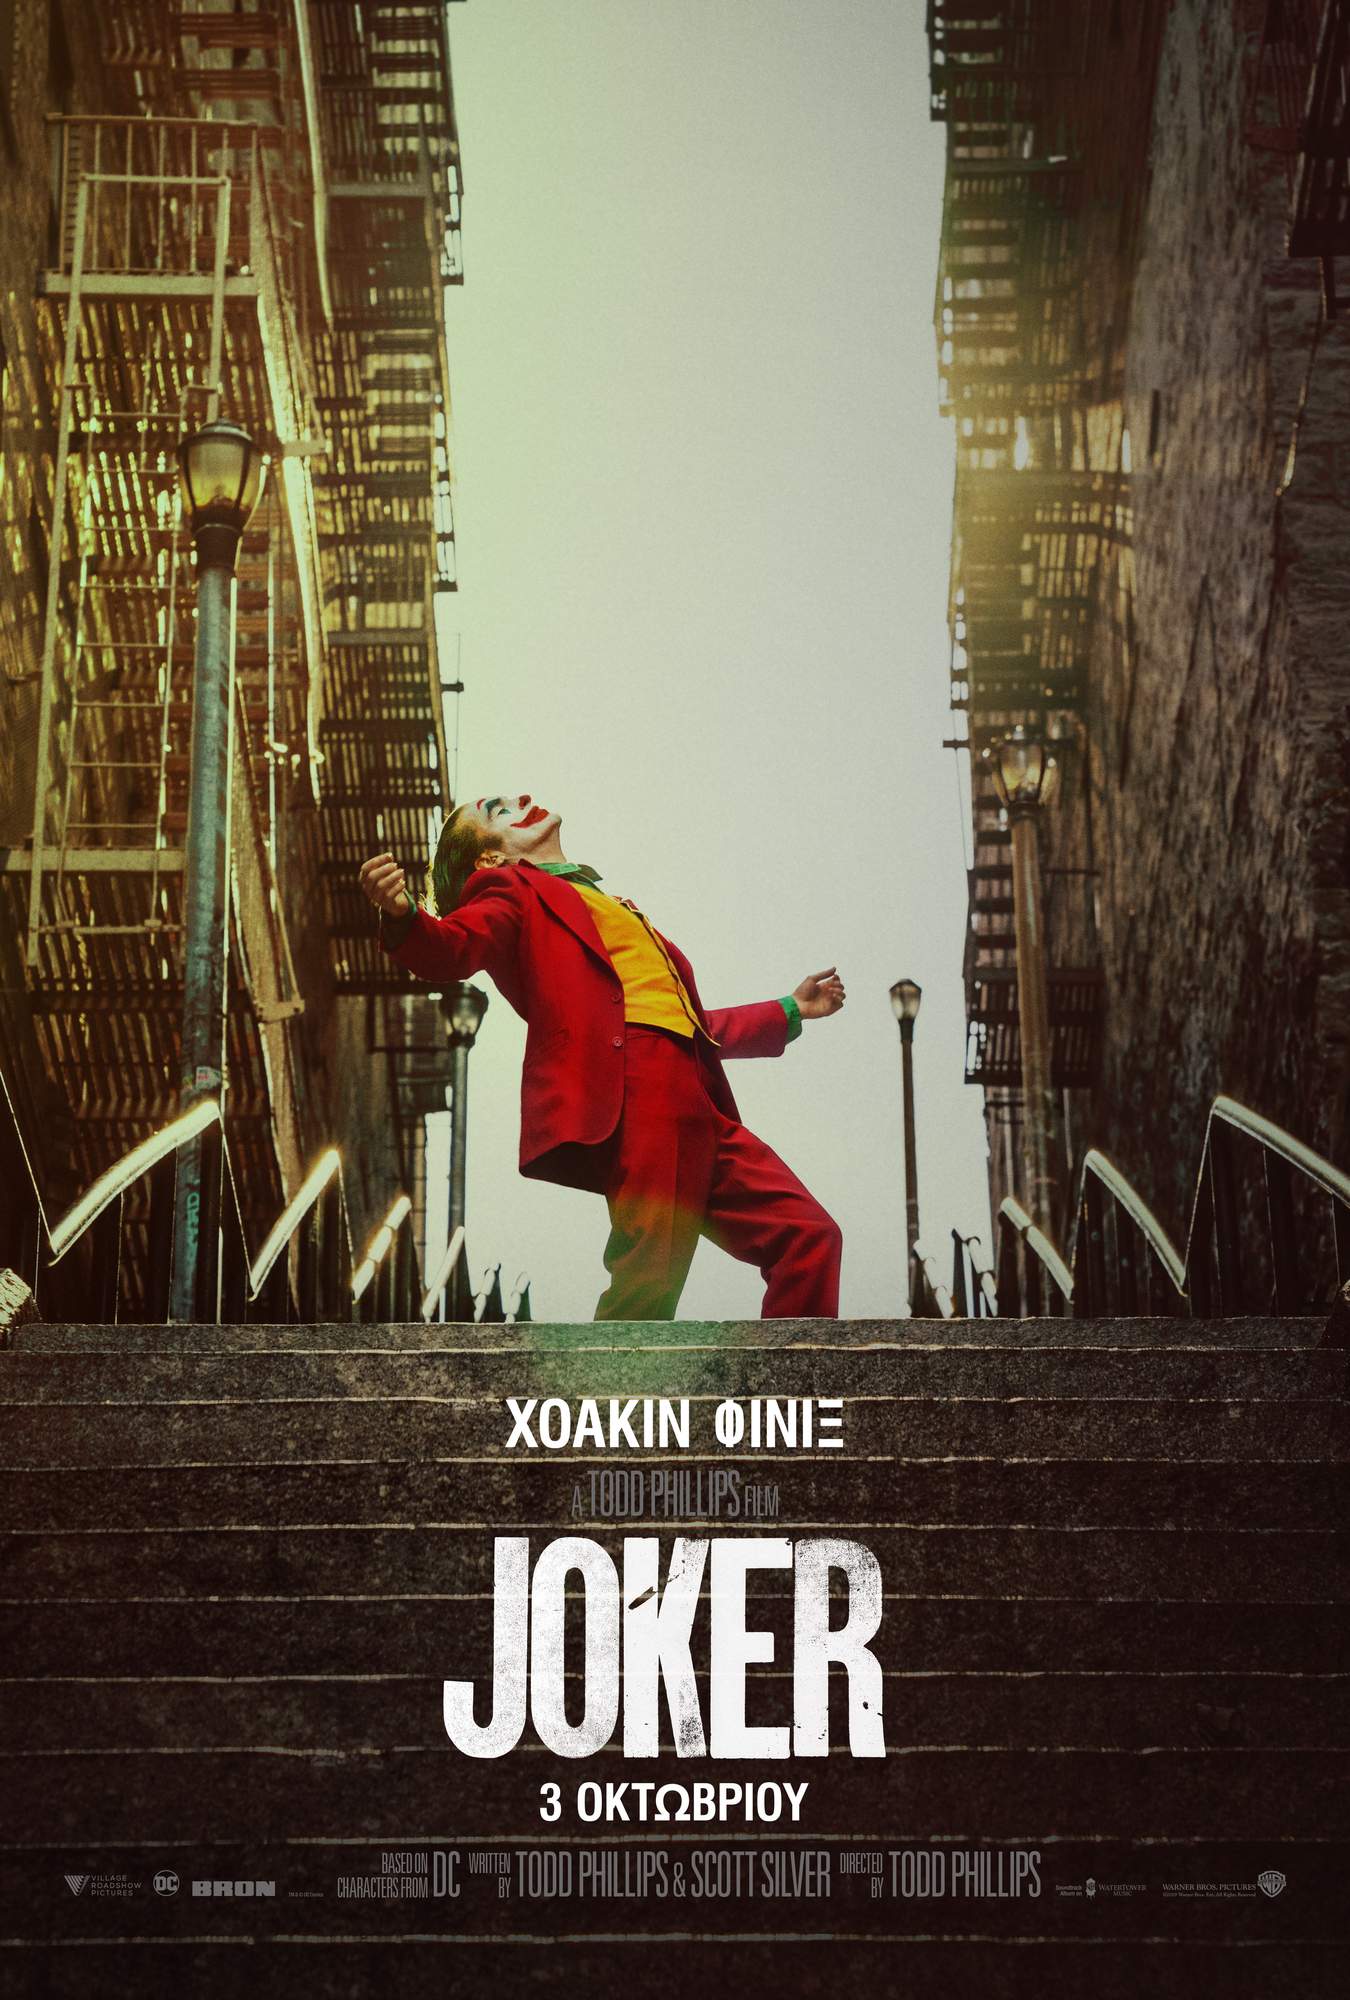 Joker 01